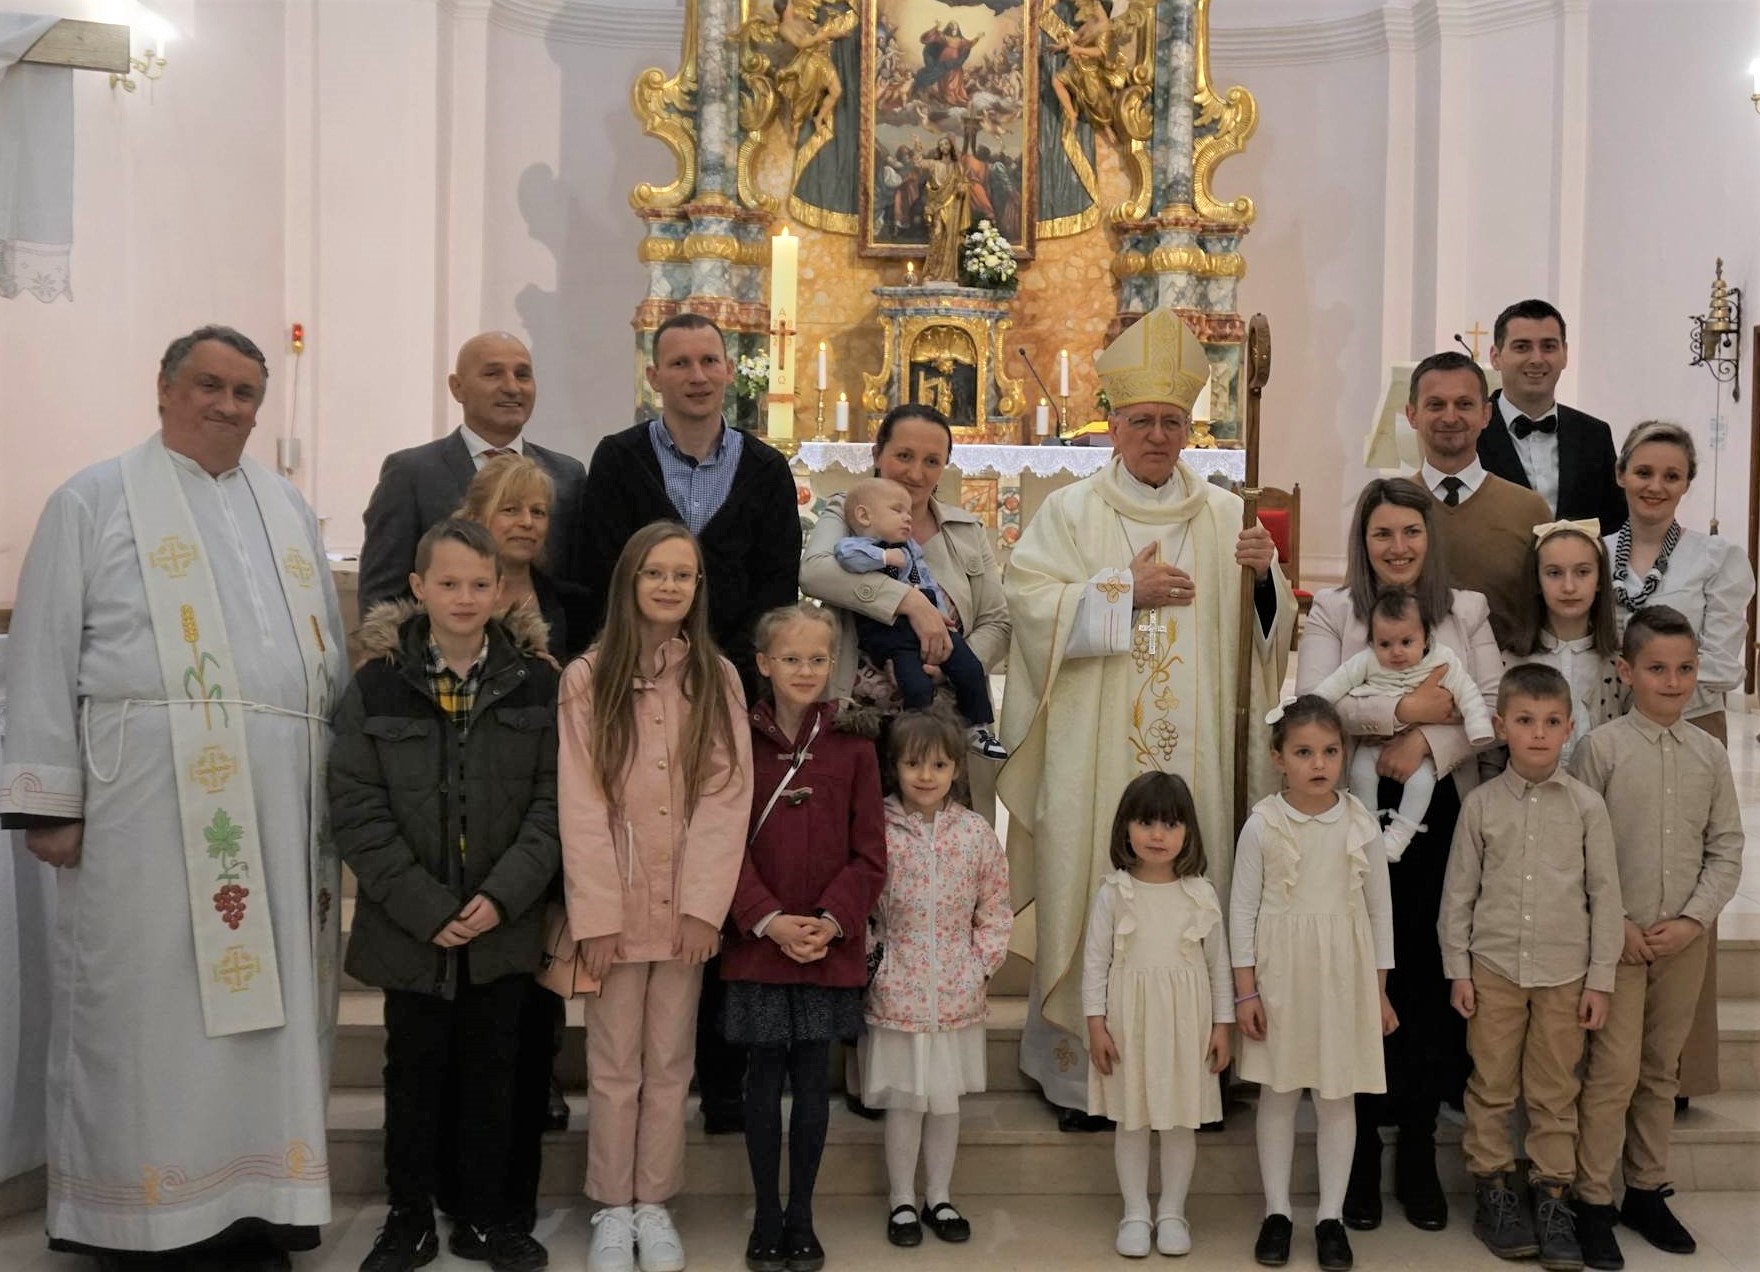 ŽUPA UBDM PAKRAC Biskup krstio šesto i peto dijete obitelji Kotorac i Tepeš